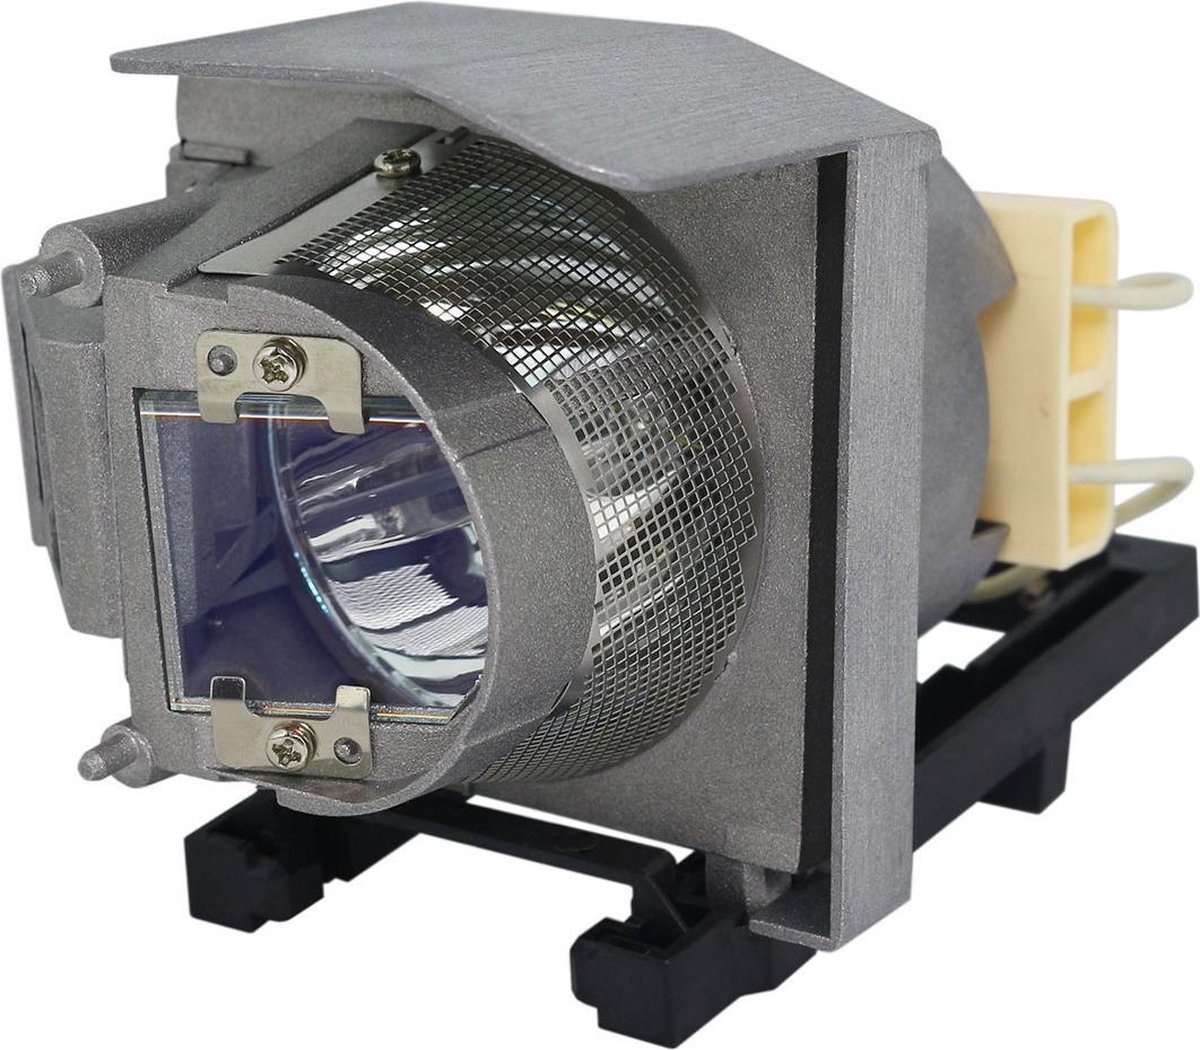 Beamerlamp geschikt voor de PANASONIC PT-CX301R beamer, lamp code ET-LAC300. Bevat originele P-VIP lamp, prestaties gelijk aan origineel.